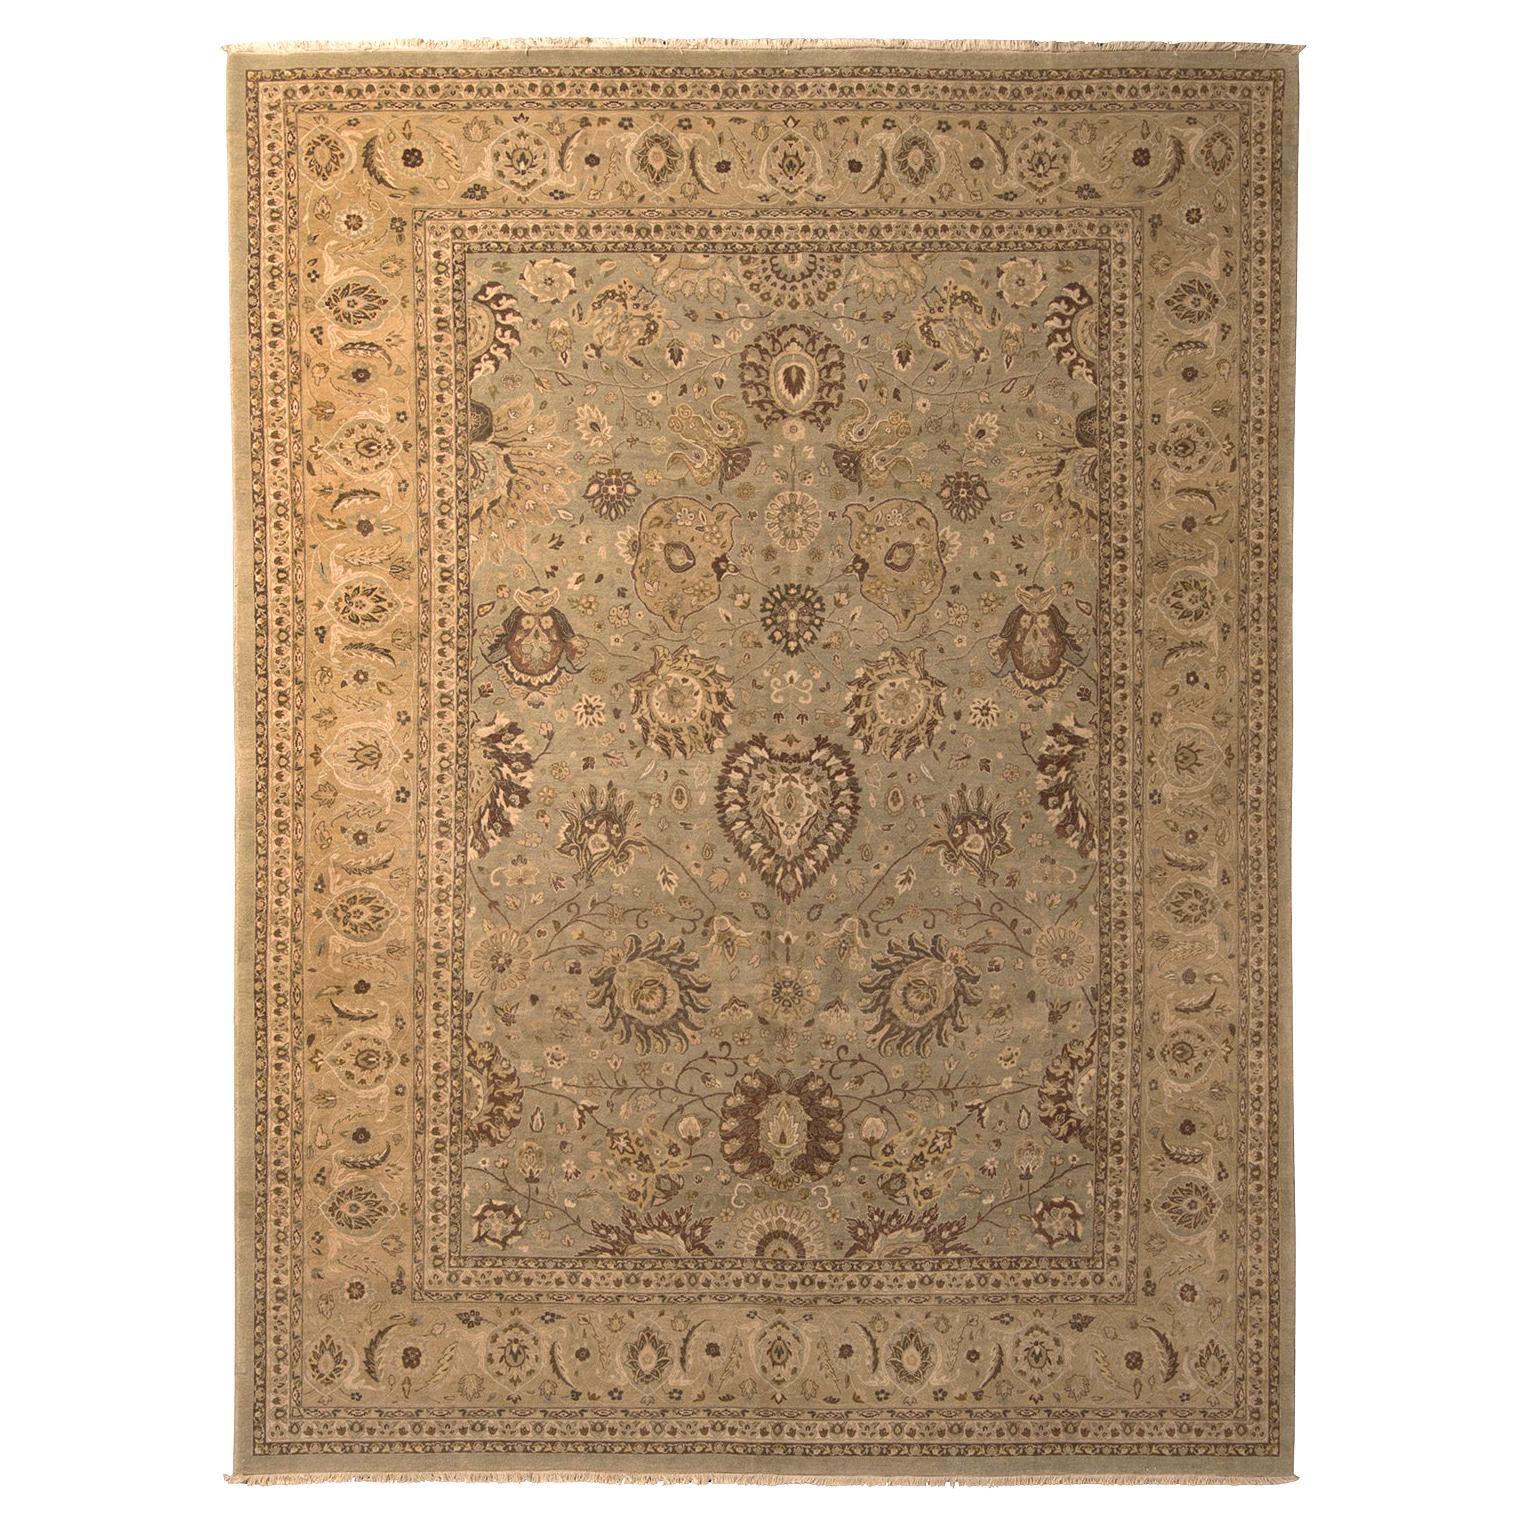 Klassischer Teppich und Kelim-Teppich im persischen Stil, blaues Feld, beige-braunes Blumenmuster